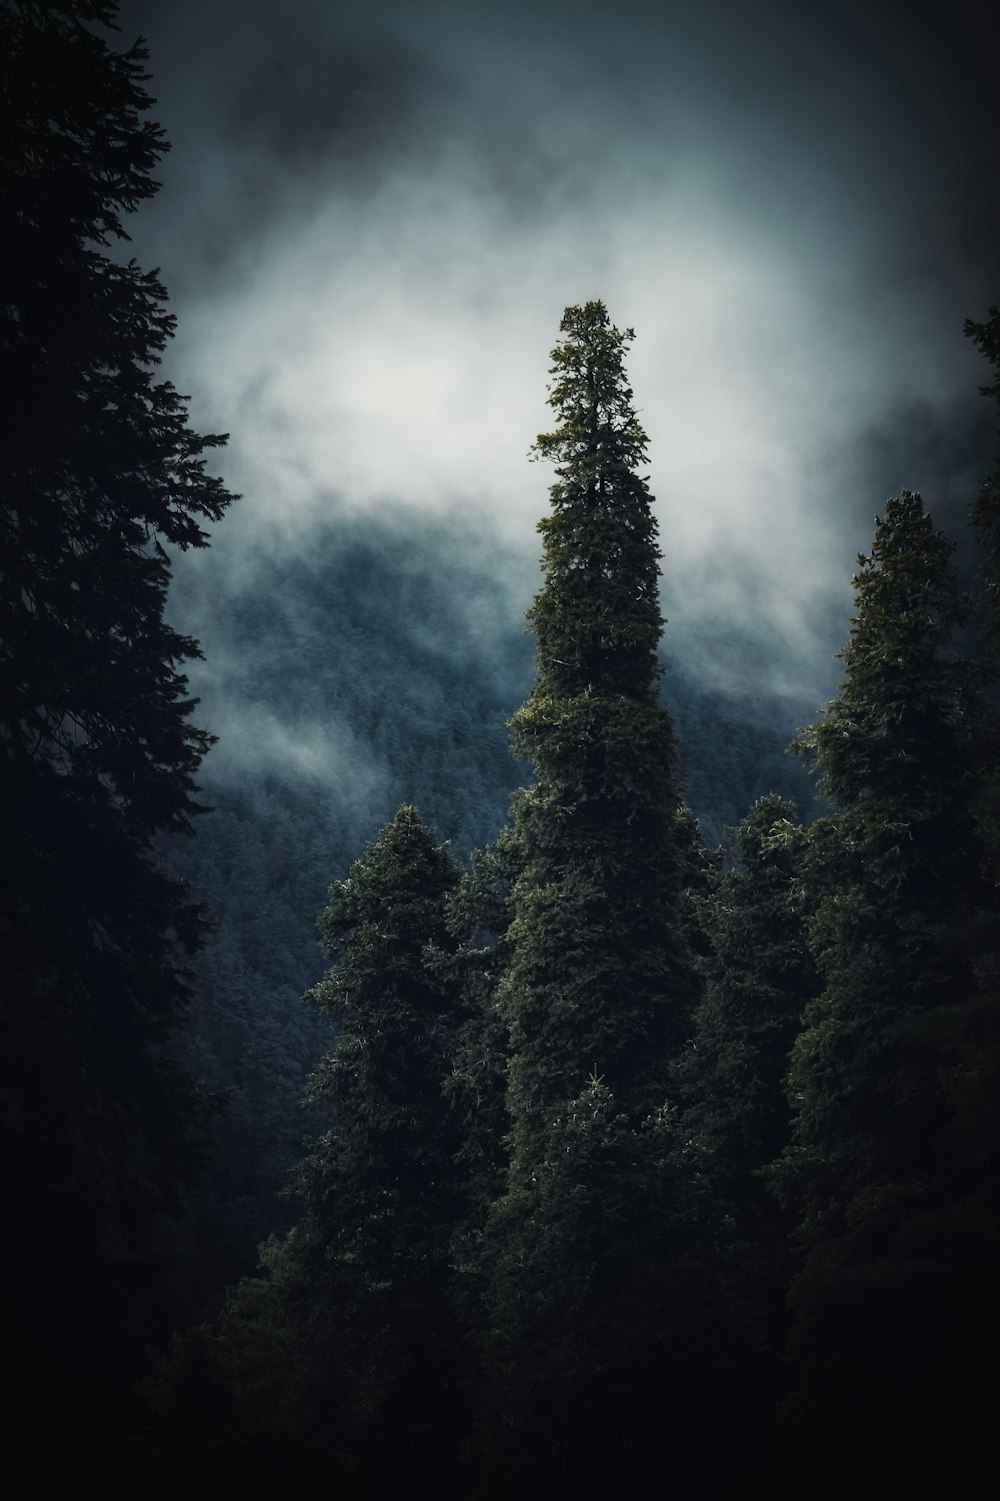 Ein dunkler Wald voller Bäume unter einem bewölkten Himmel